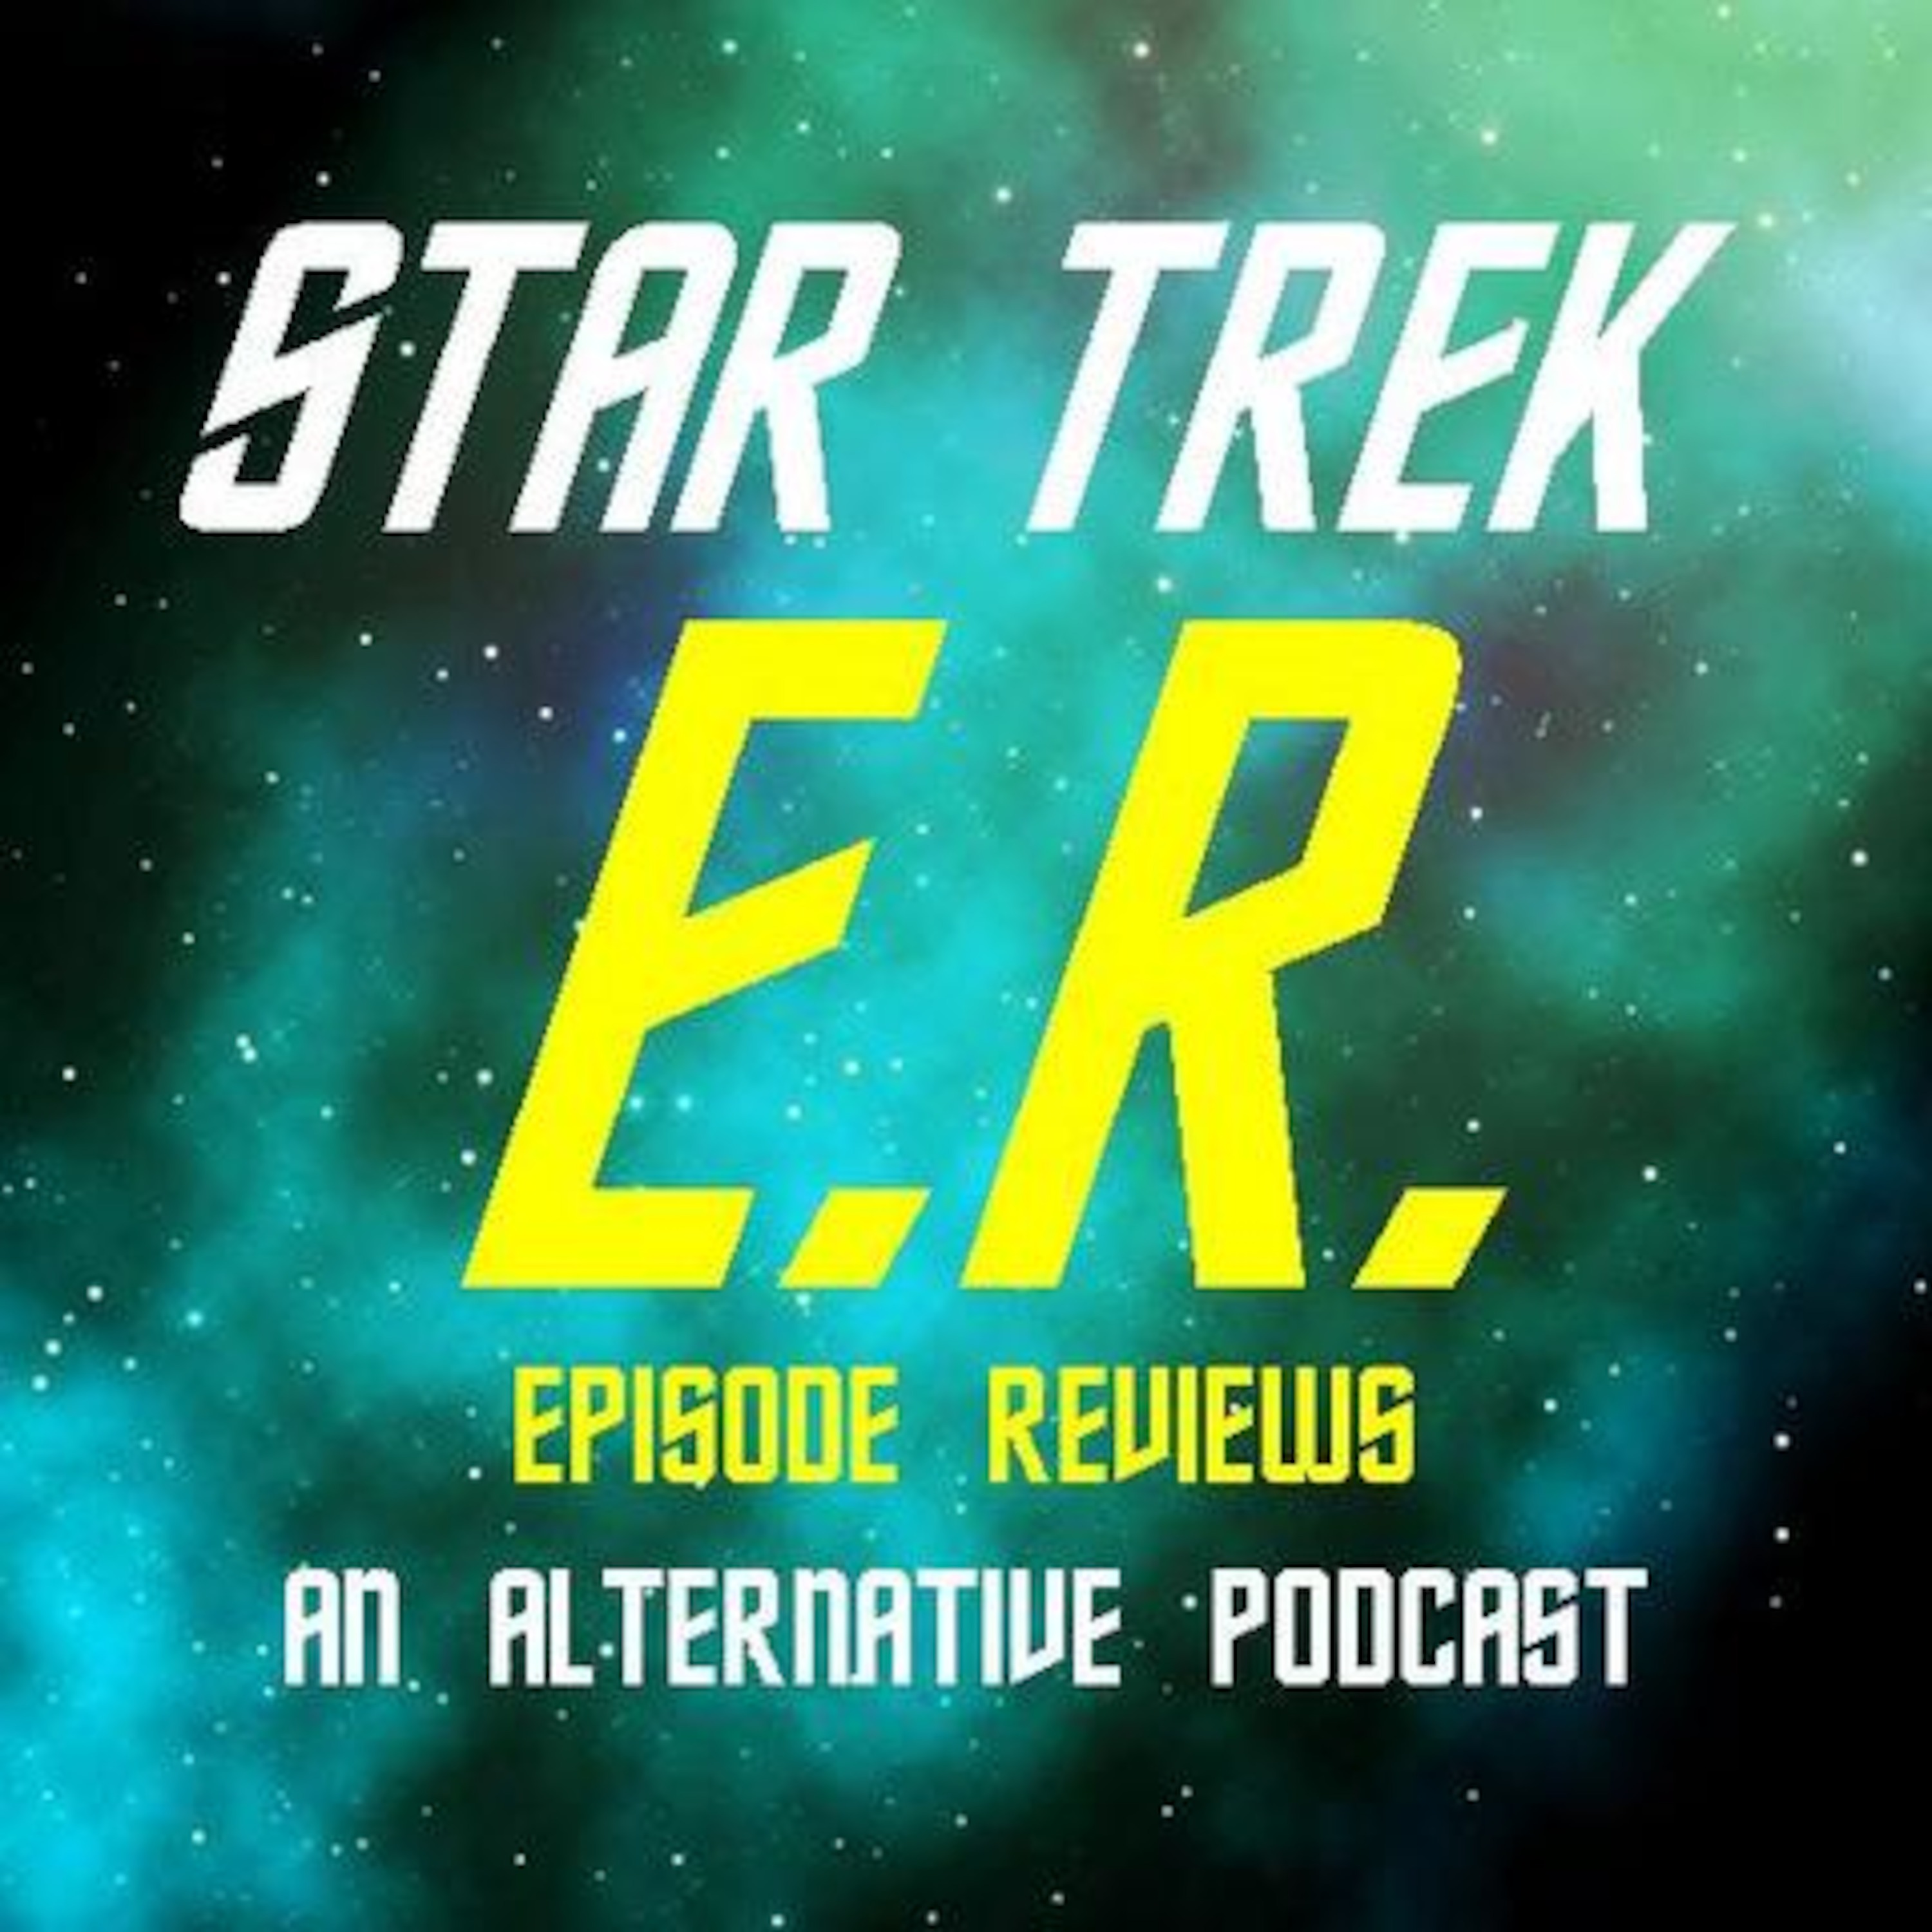 Star Trek ER Podcast